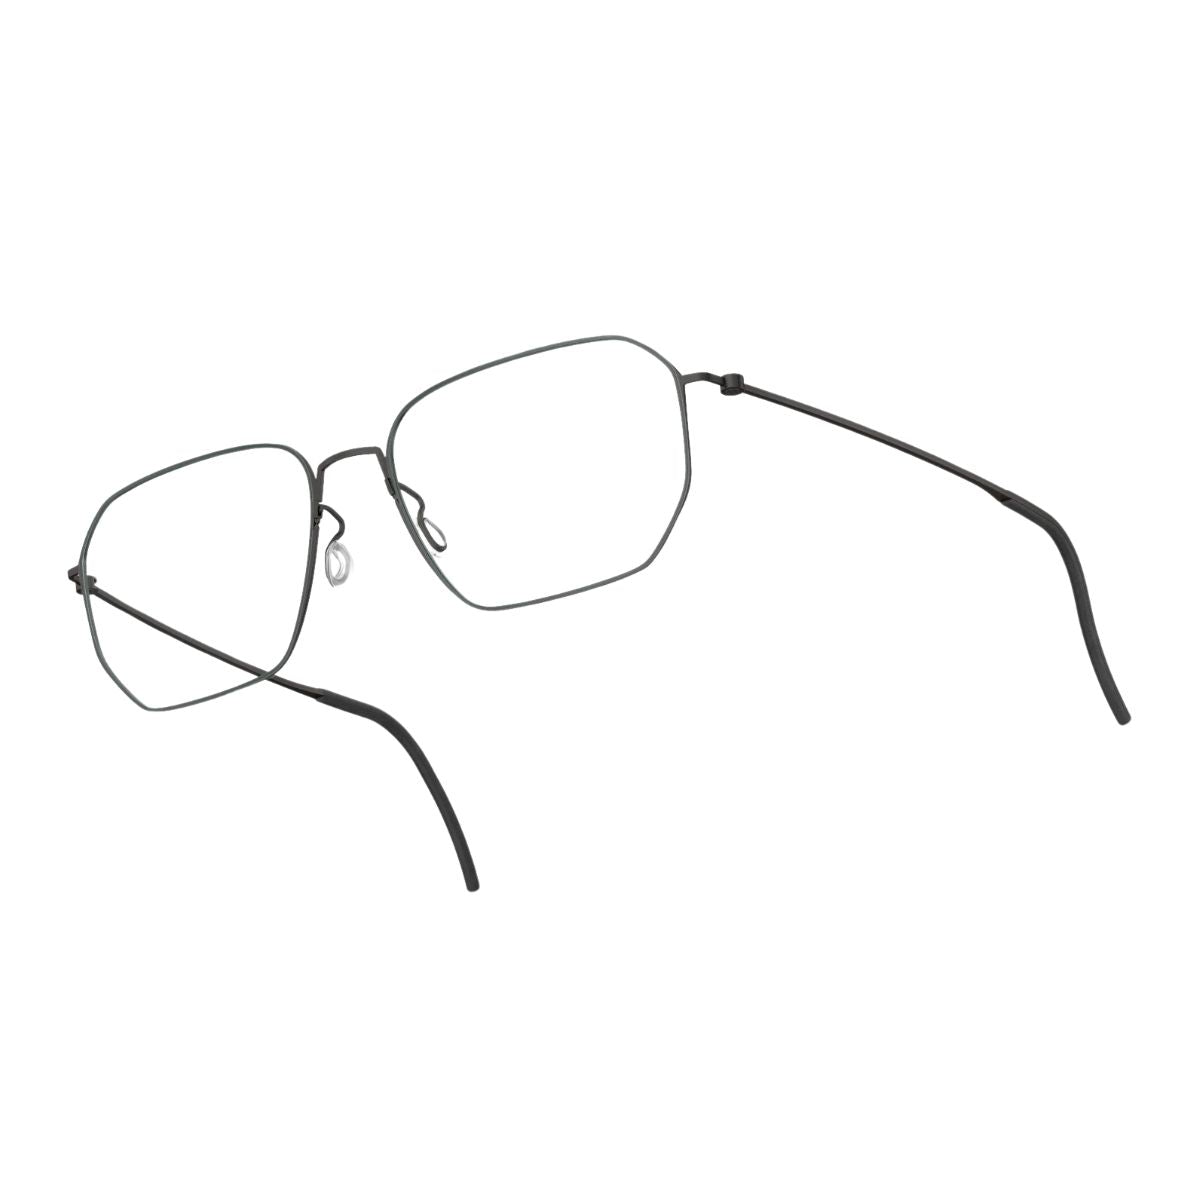 "Buy Latest Lindberg Eyewear 5545 Optical Frames For Men & Women At optorium"